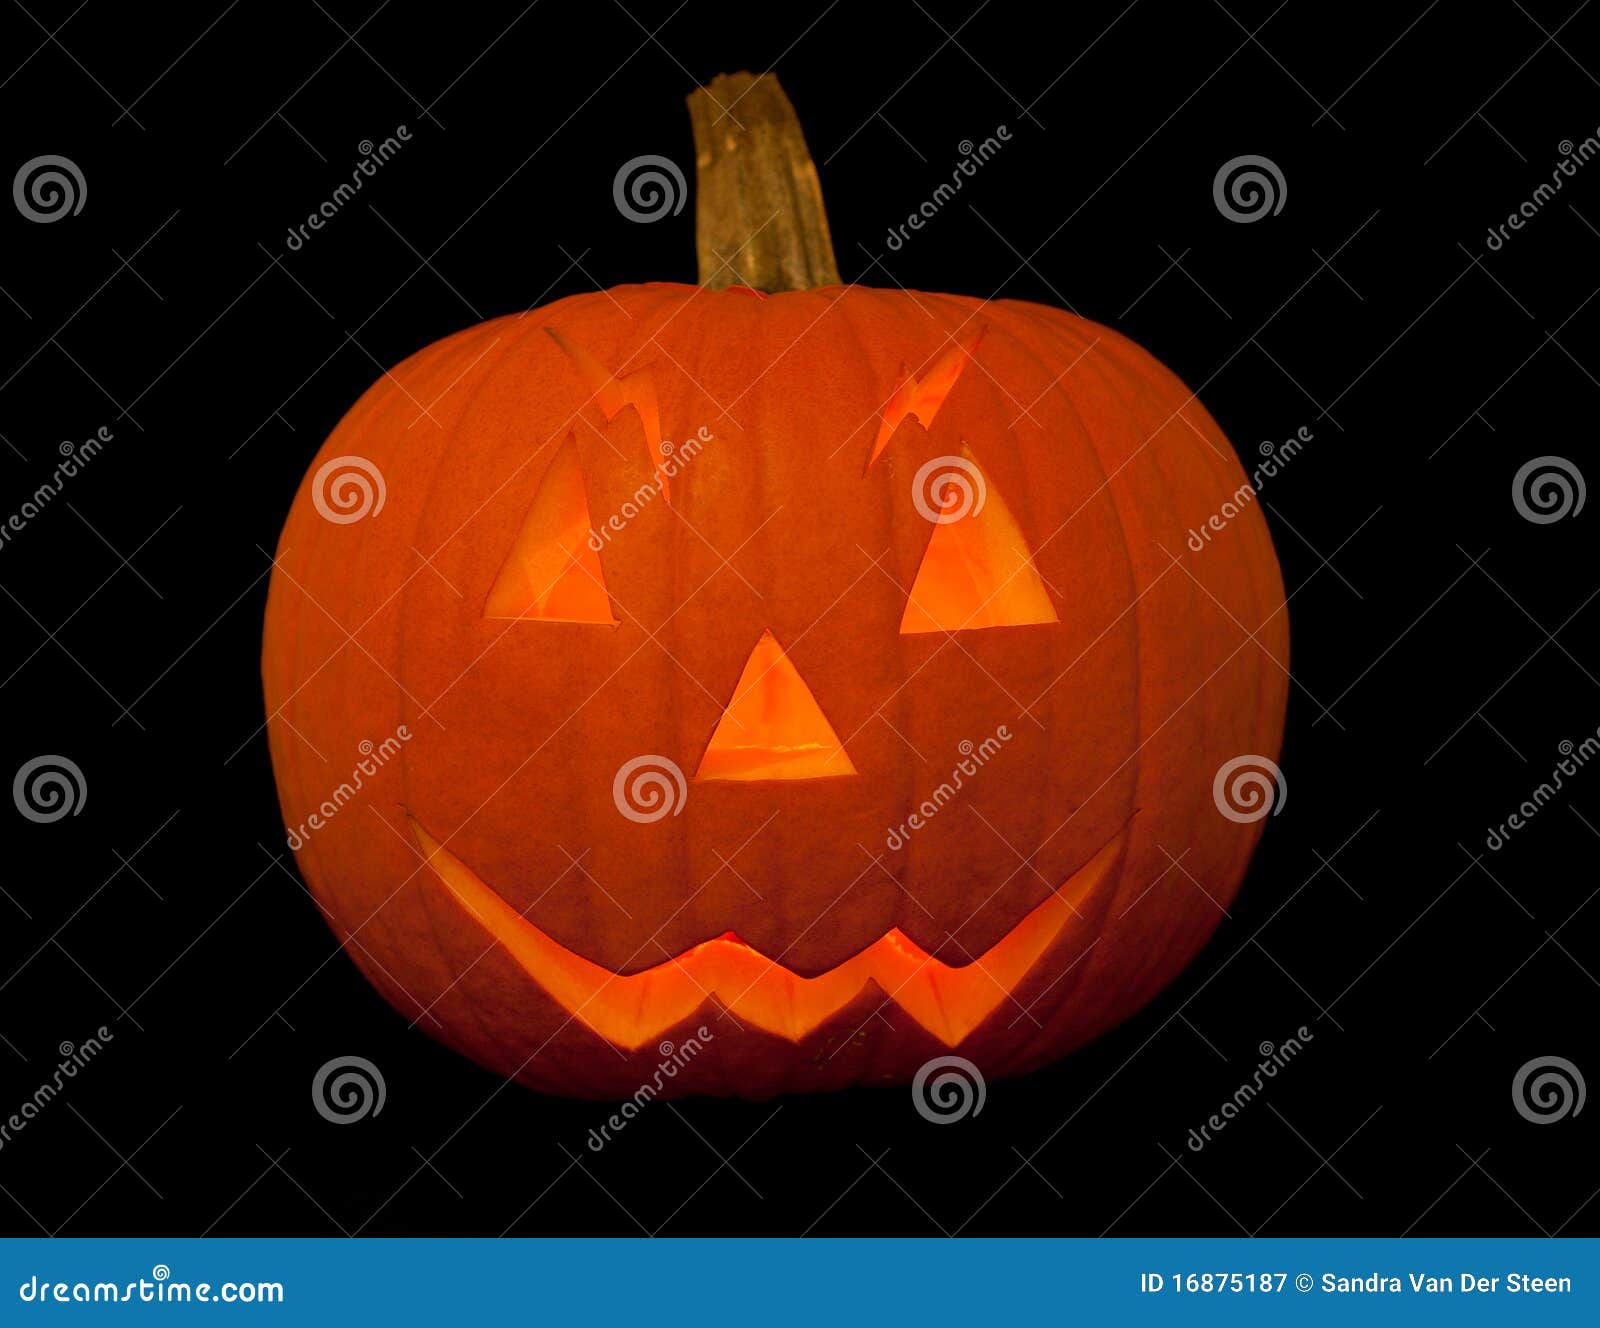 verkiezen verband Persoonlijk Enge Halloween Pompoen Met Gezicht Stock Afbeelding - Image of behandel,  geïsoleerd: 16875187